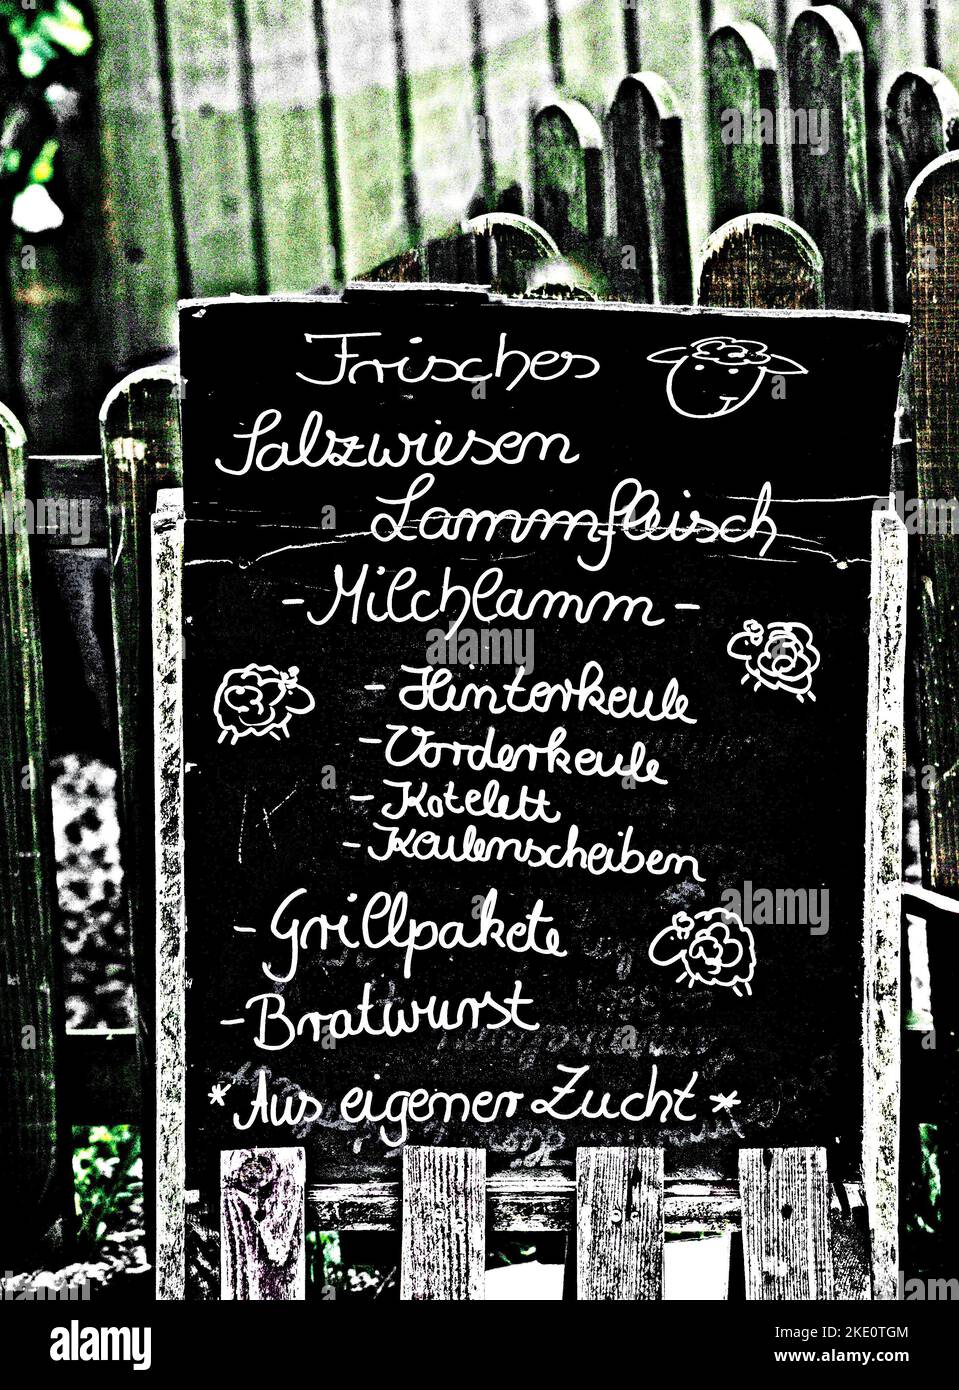 Angebot von einem Imbiss in Eiderstedt; Menu of a snack in Northern Germany Stock Photo